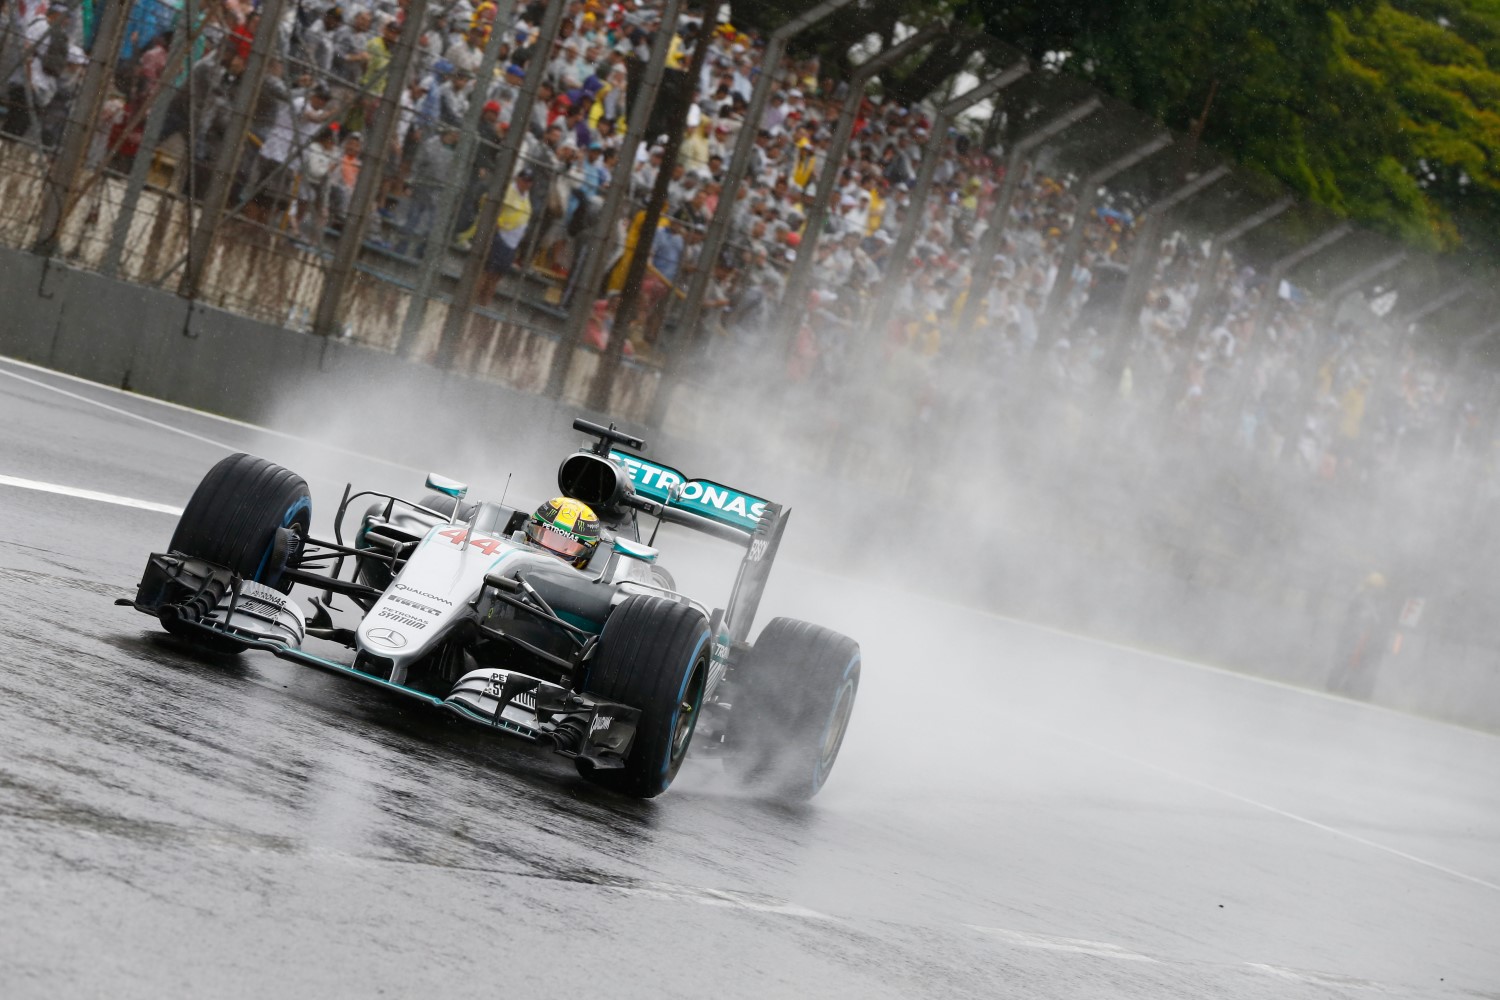 It will be a very wet Brazilian GP weekend